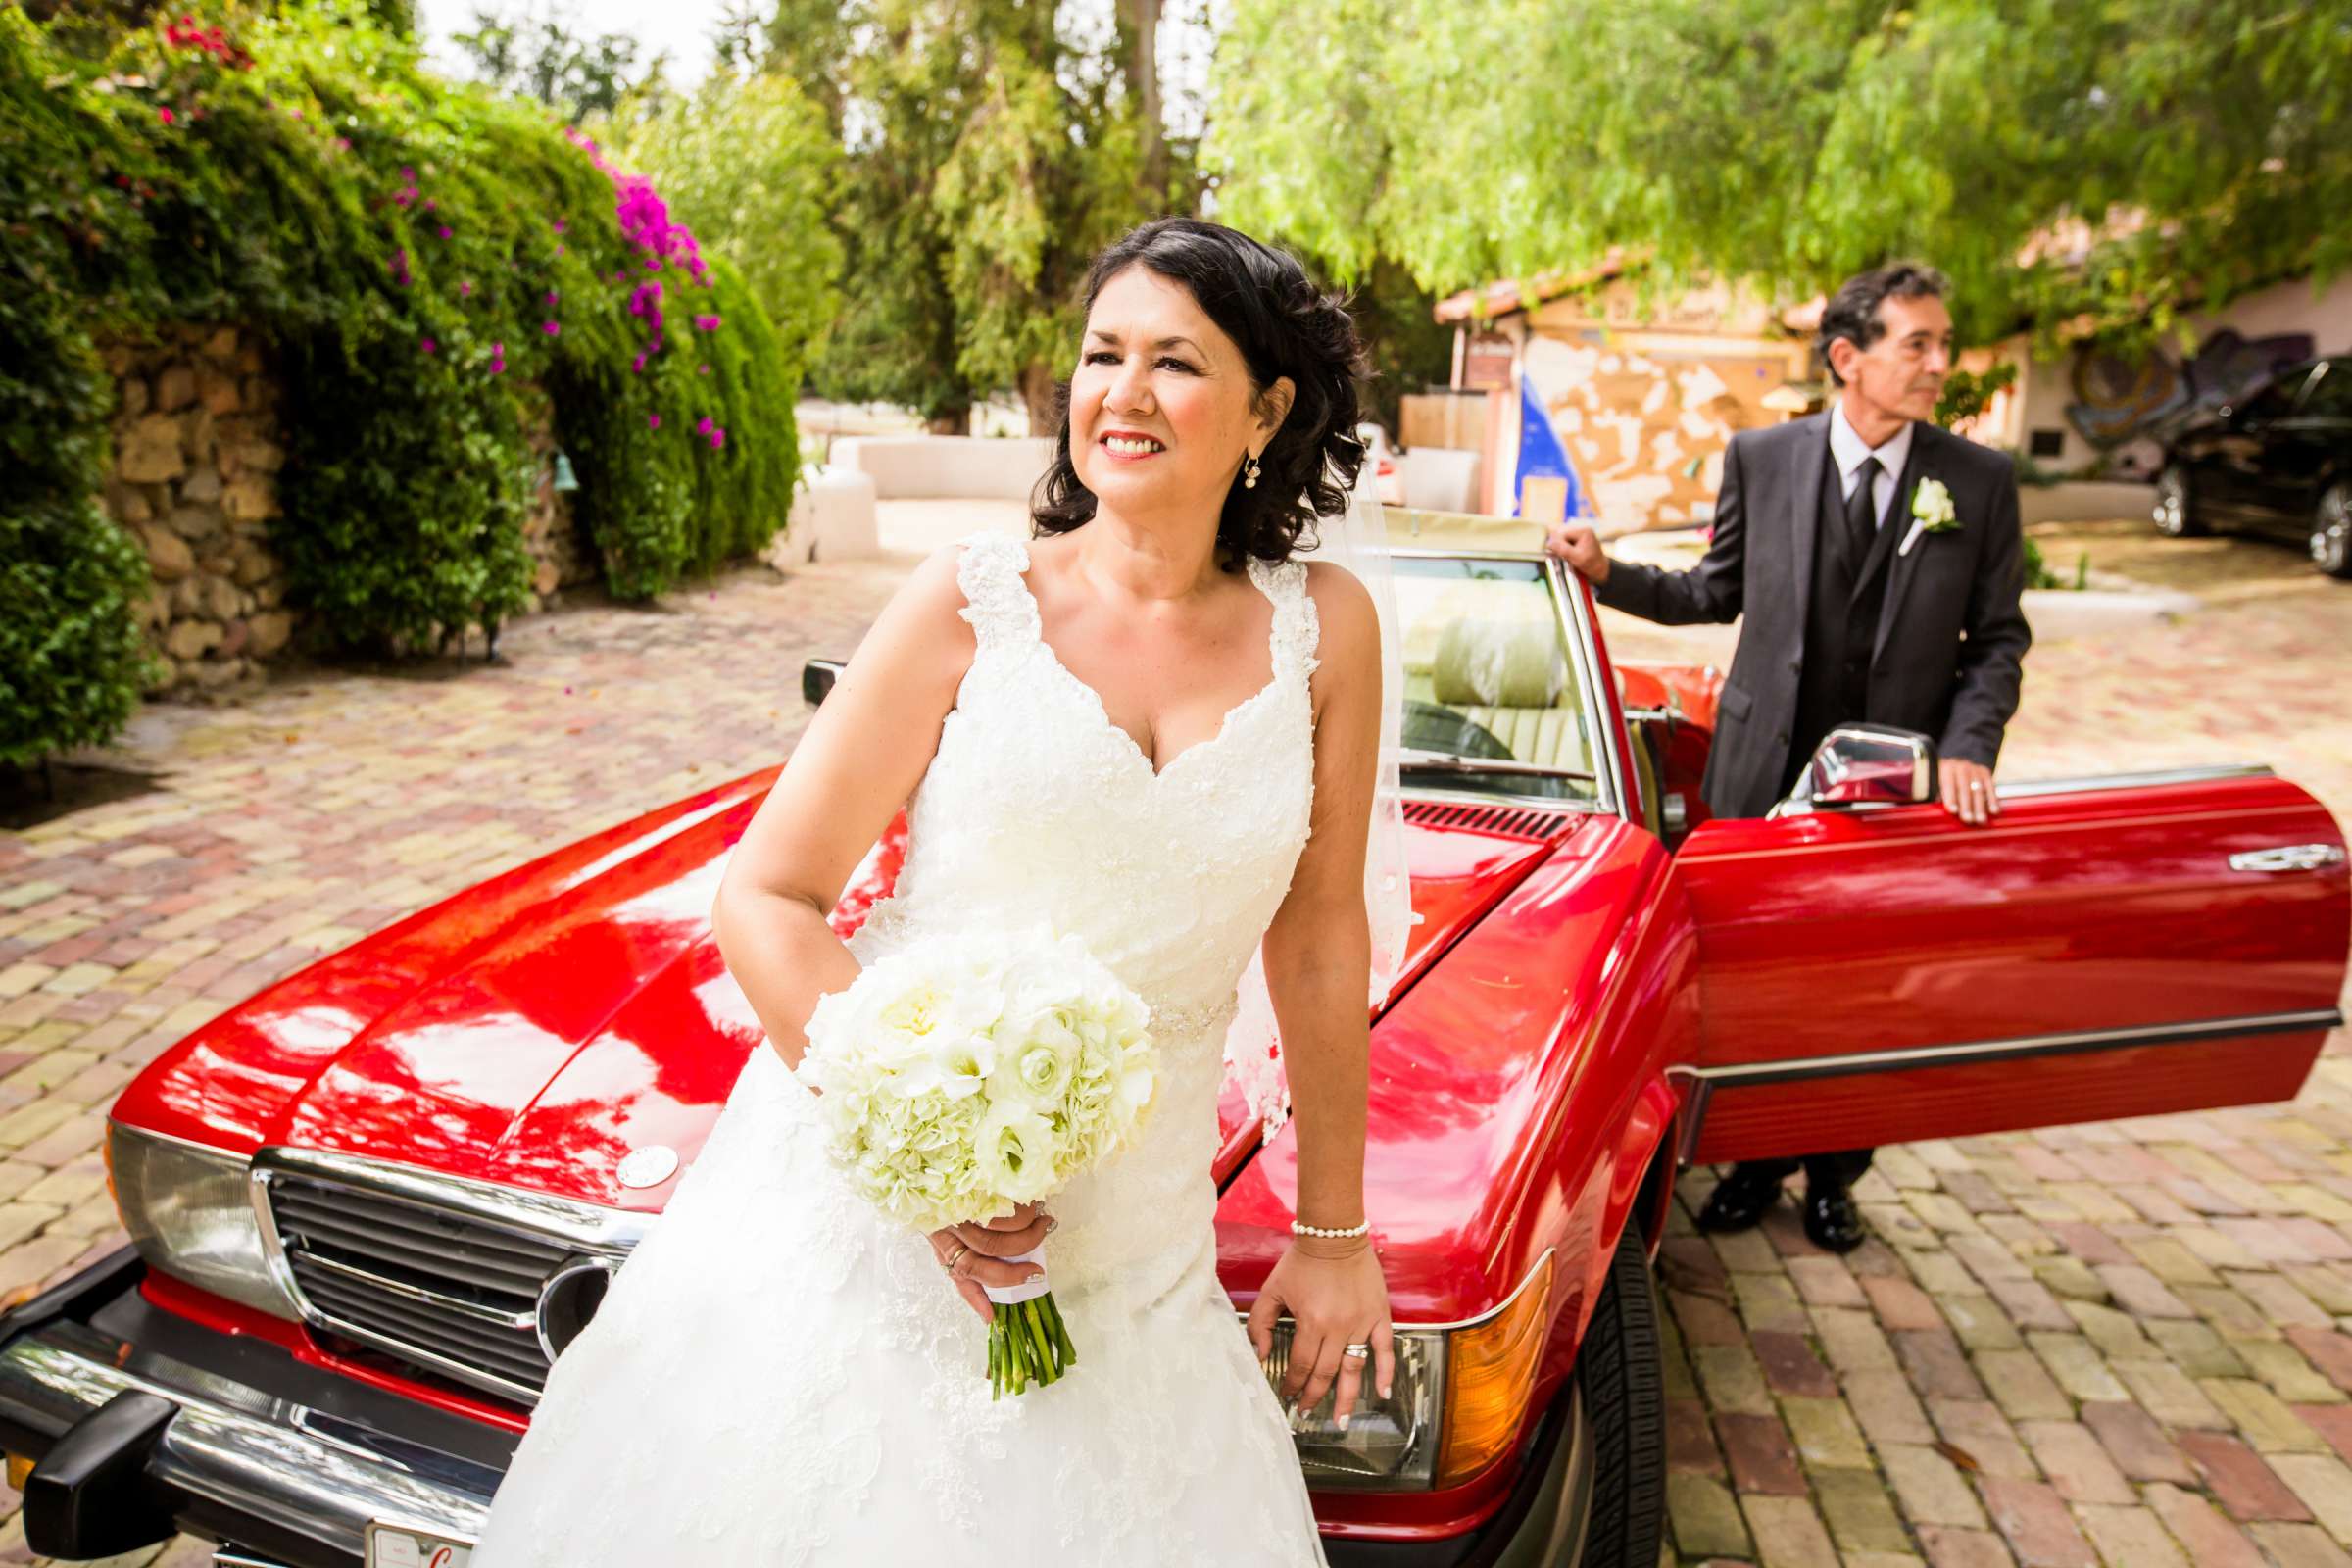 Rancho Buena Vista Adobe Wedding, Ellinor and Frank Wedding Photo #2 by True Photography